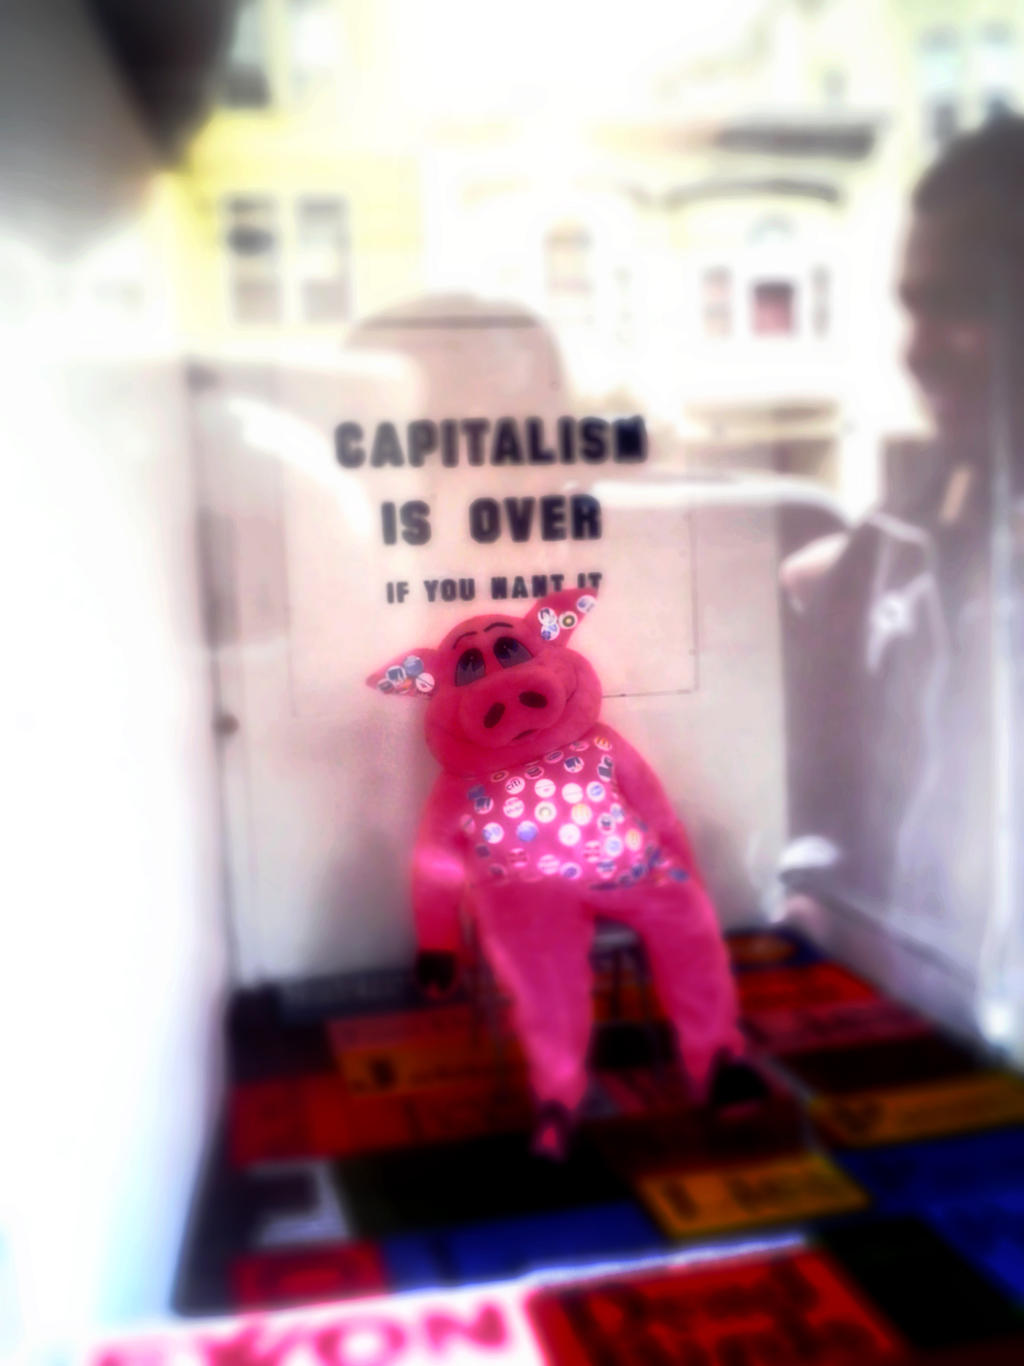 Capitalism in San Fran